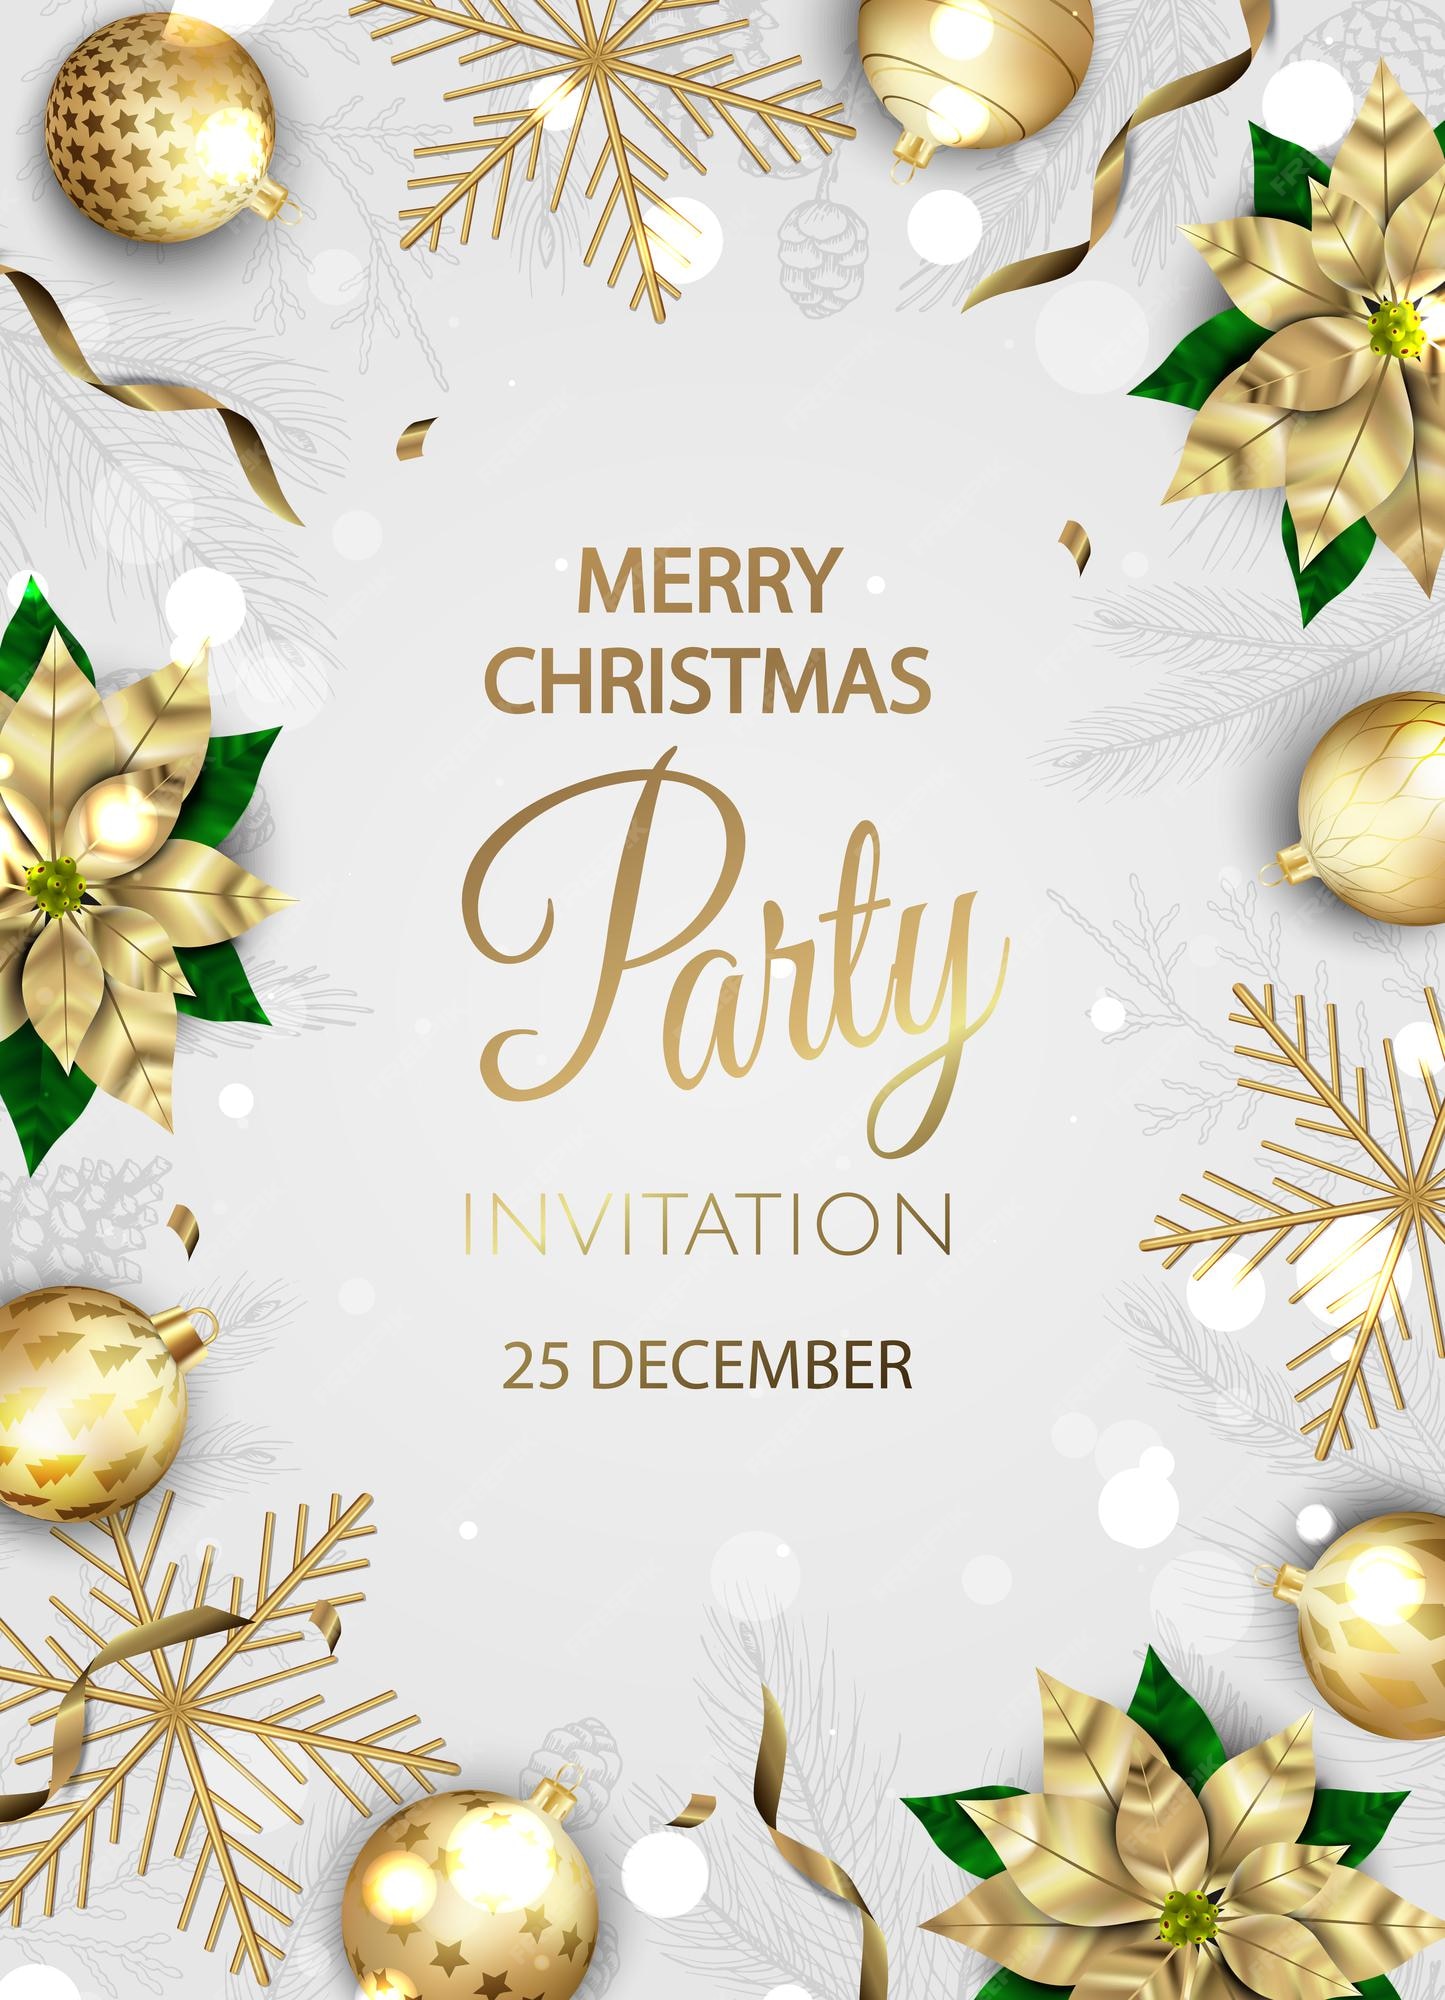 Lời mời tiệc Giáng Sinh sẽ là cầu nối để kết nối bạn với những người thân yêu, bạn bè và đồng nghiệp trong ngày lễ quan trọng này. Hãy tham gia chương trình tiệc tùng đầy vui vẻ và ấm áp để cùng nhau chia sẻ tình yêu và niềm vui.